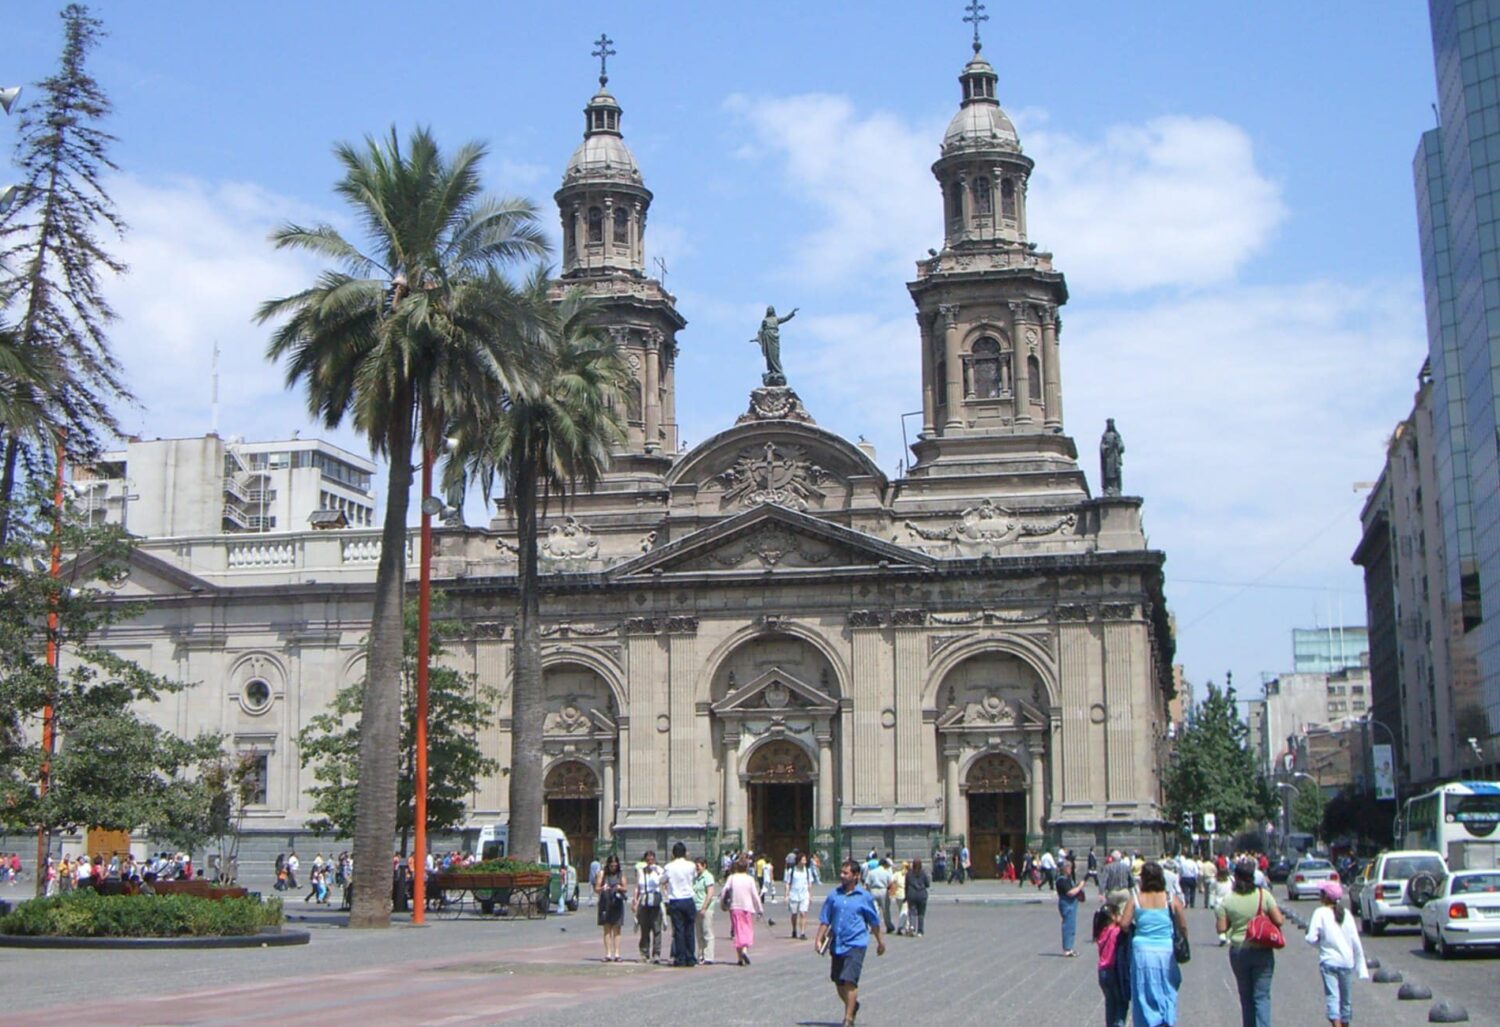 Vista da Plaza de Armas, em Santiago, Chile, durante o dia com prédio antigo a frente e algumas pessoas andando na praça. Representa Santiago.